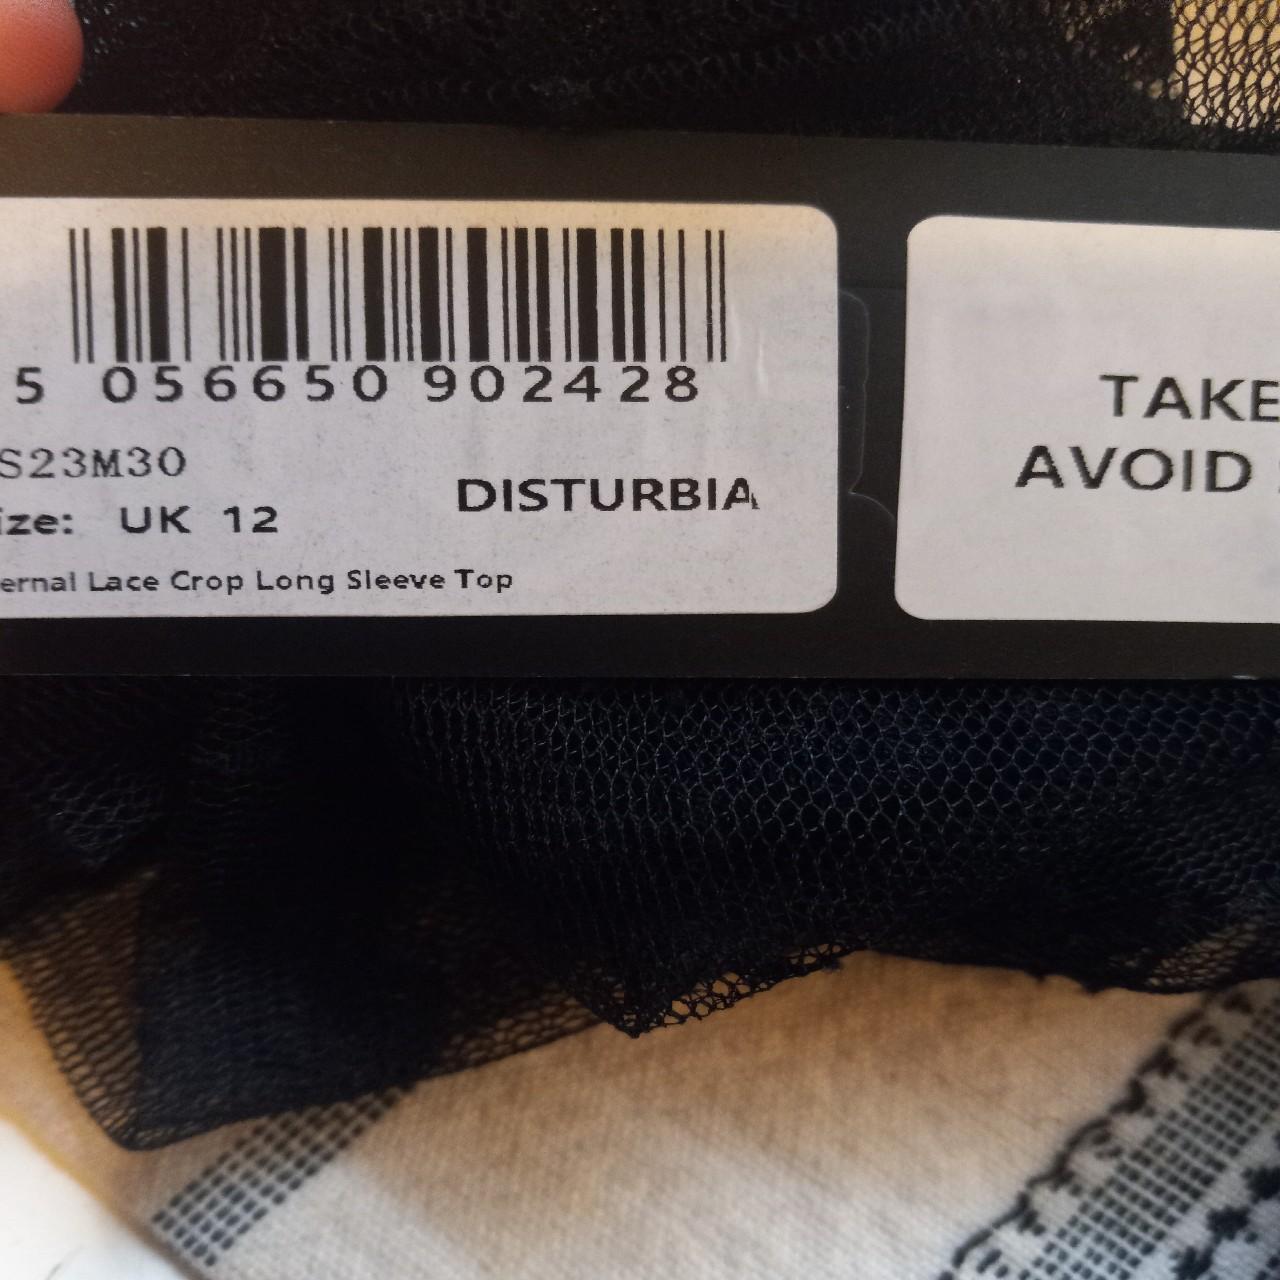 Eternal Lace Crop Long Sleeve Top – Disturbia